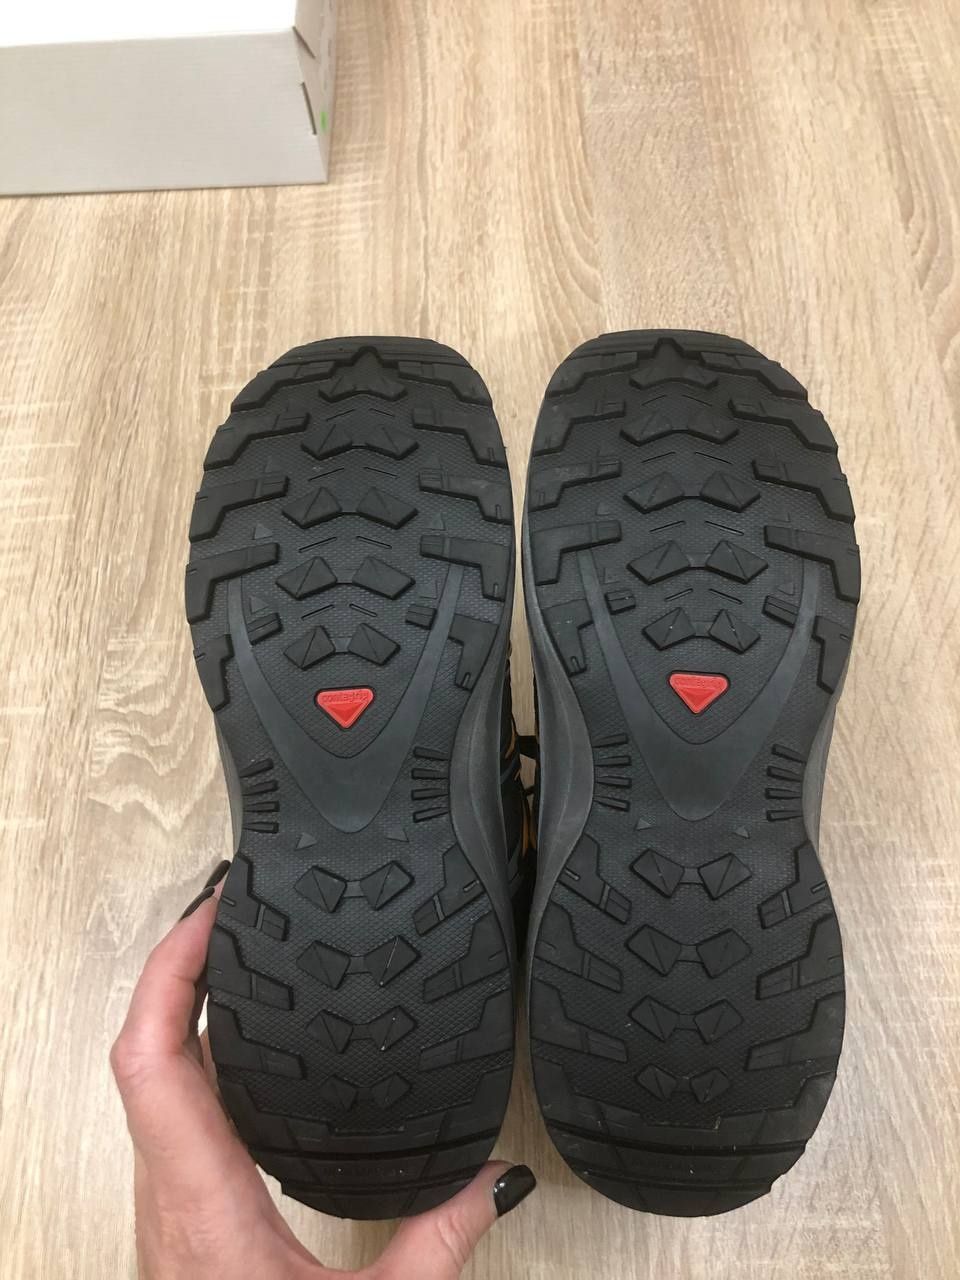 Salomon waterproof черевики ботінки кросівки ботінки